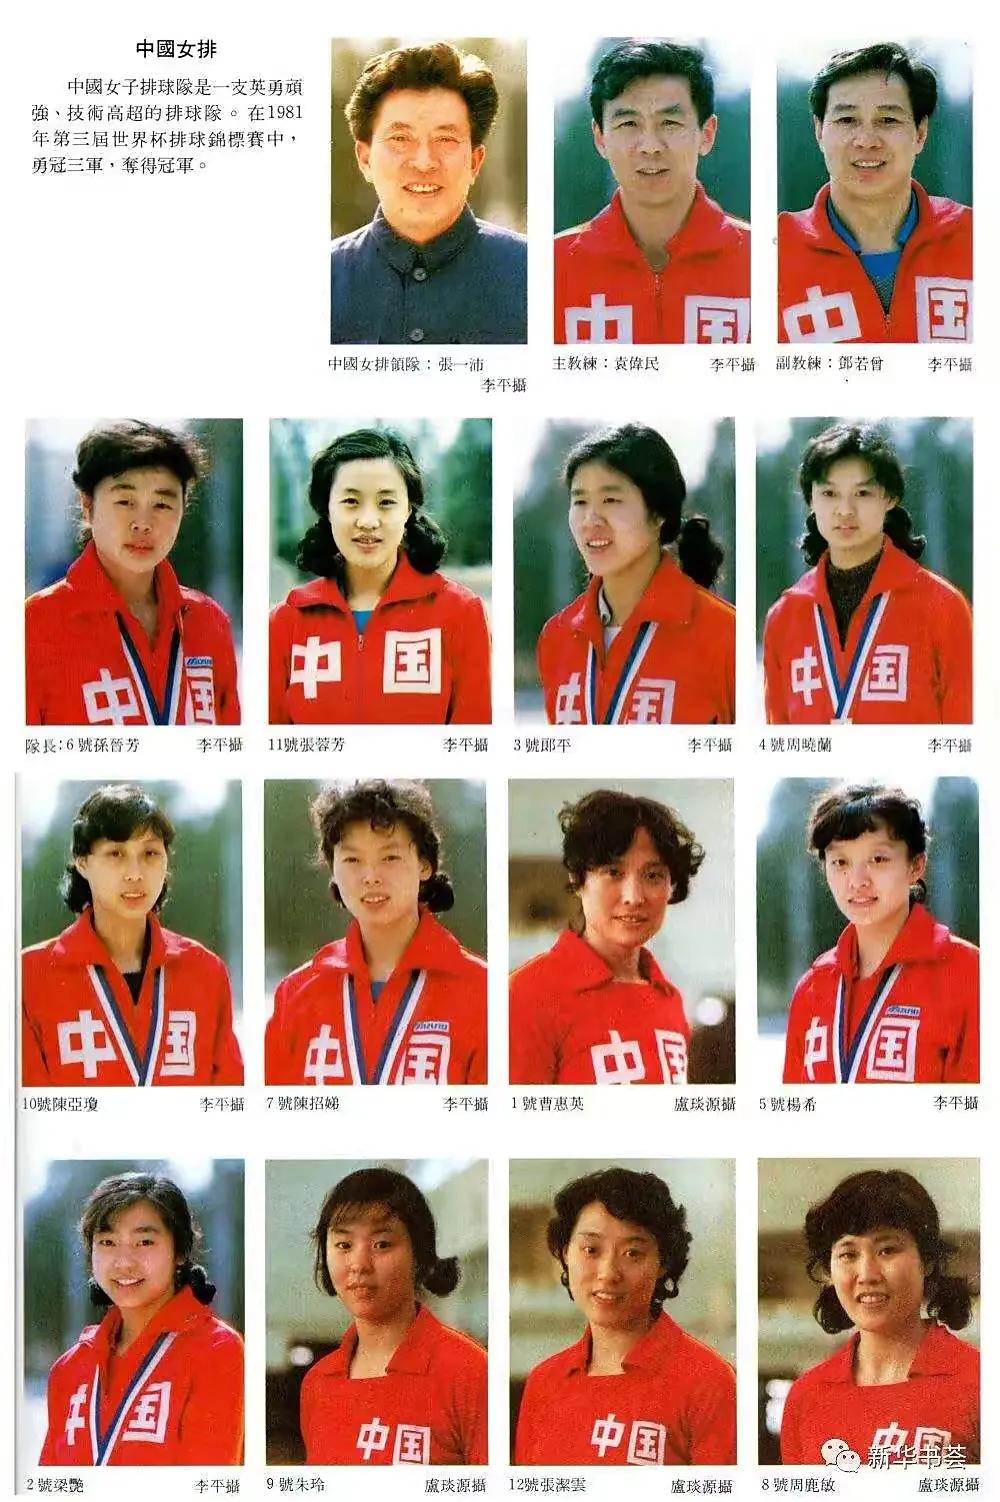 中国女排哪年首次获得世界杯冠军(1981年中国女排首夺世界杯冠军 冠军队阵容回忆)